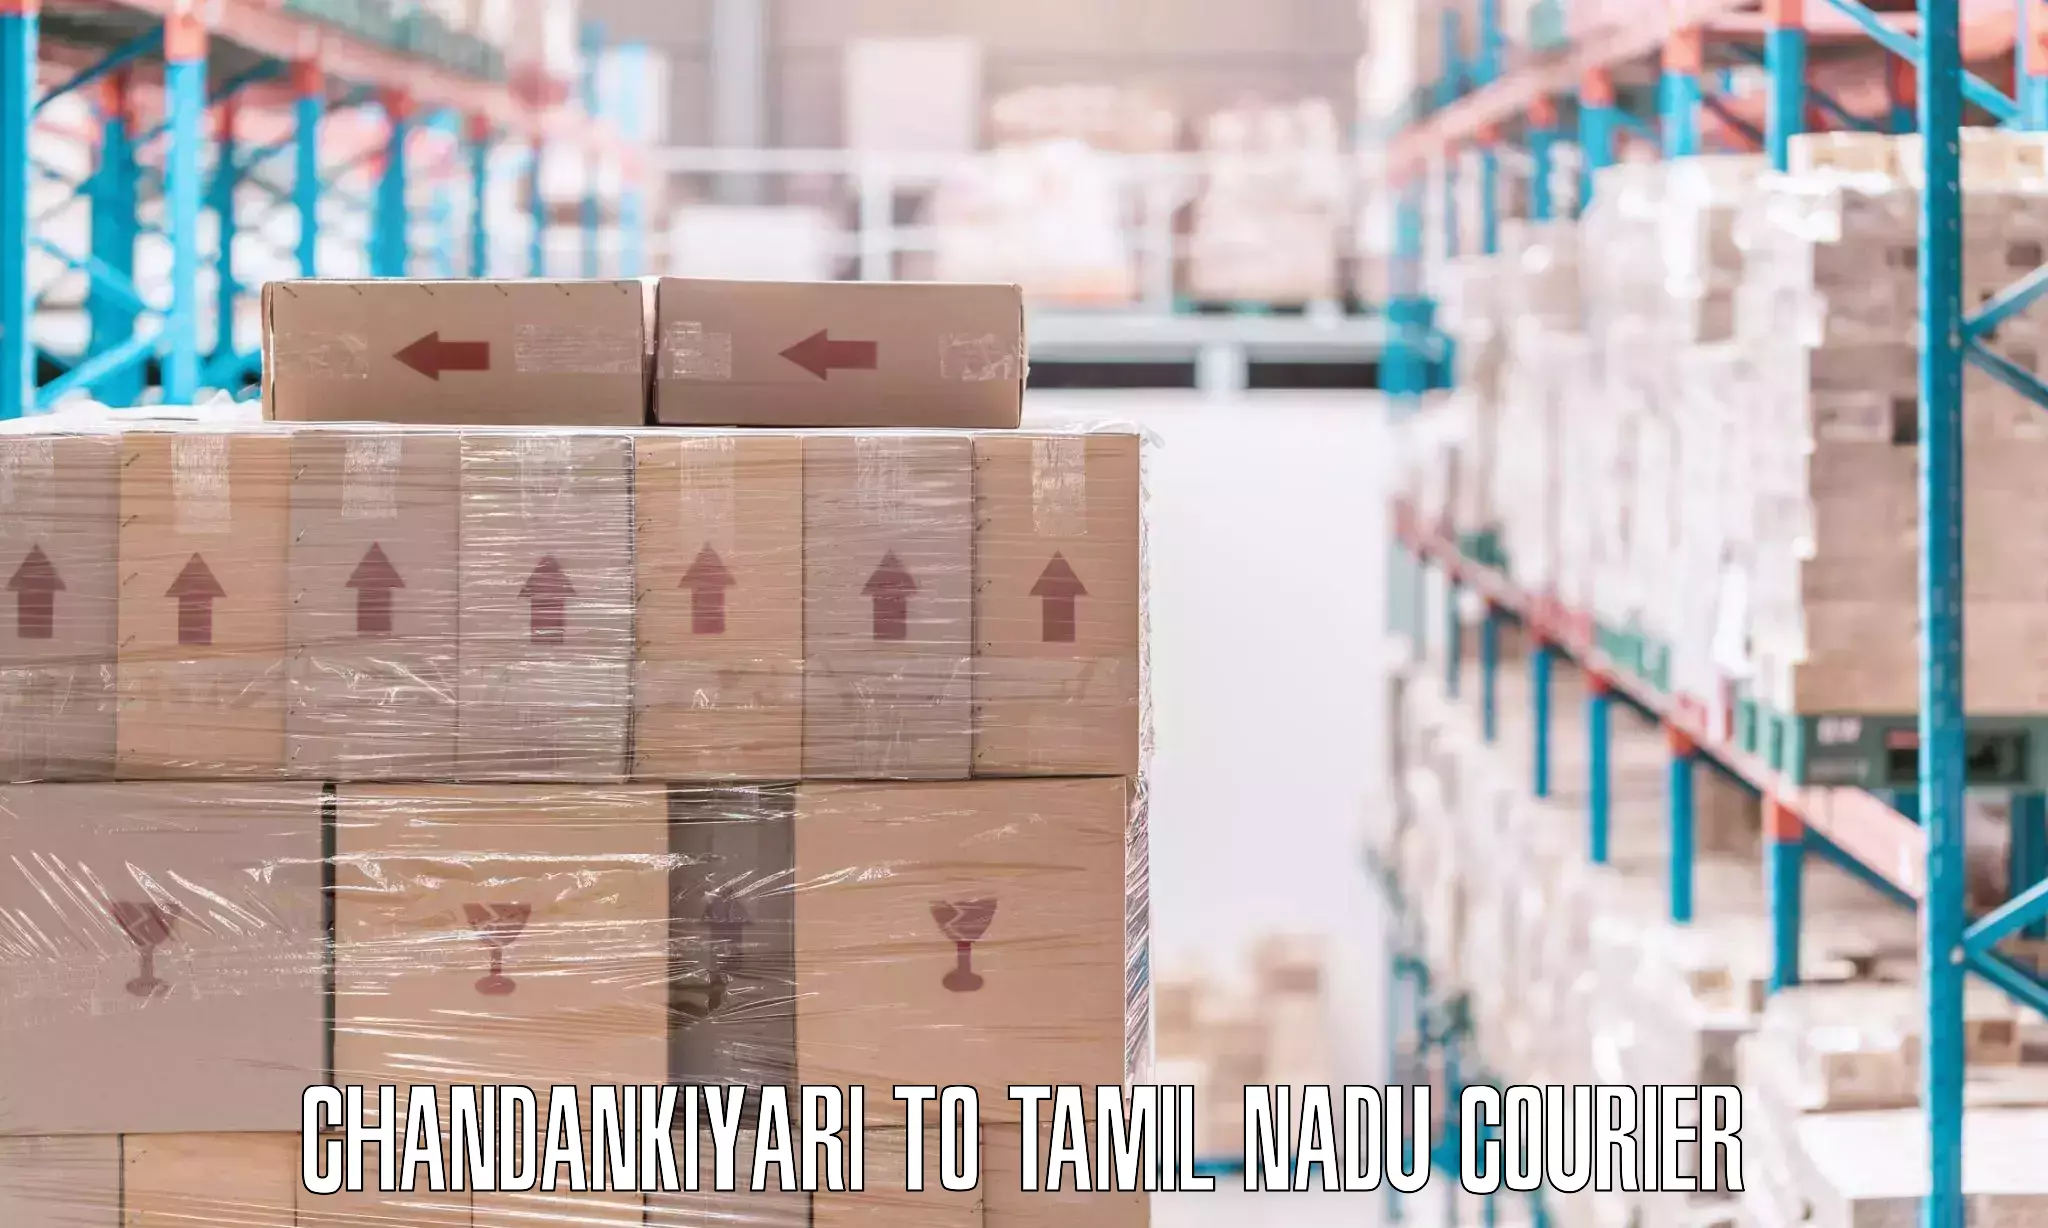 Skilled furniture transporters Chandankiyari to Ambattur